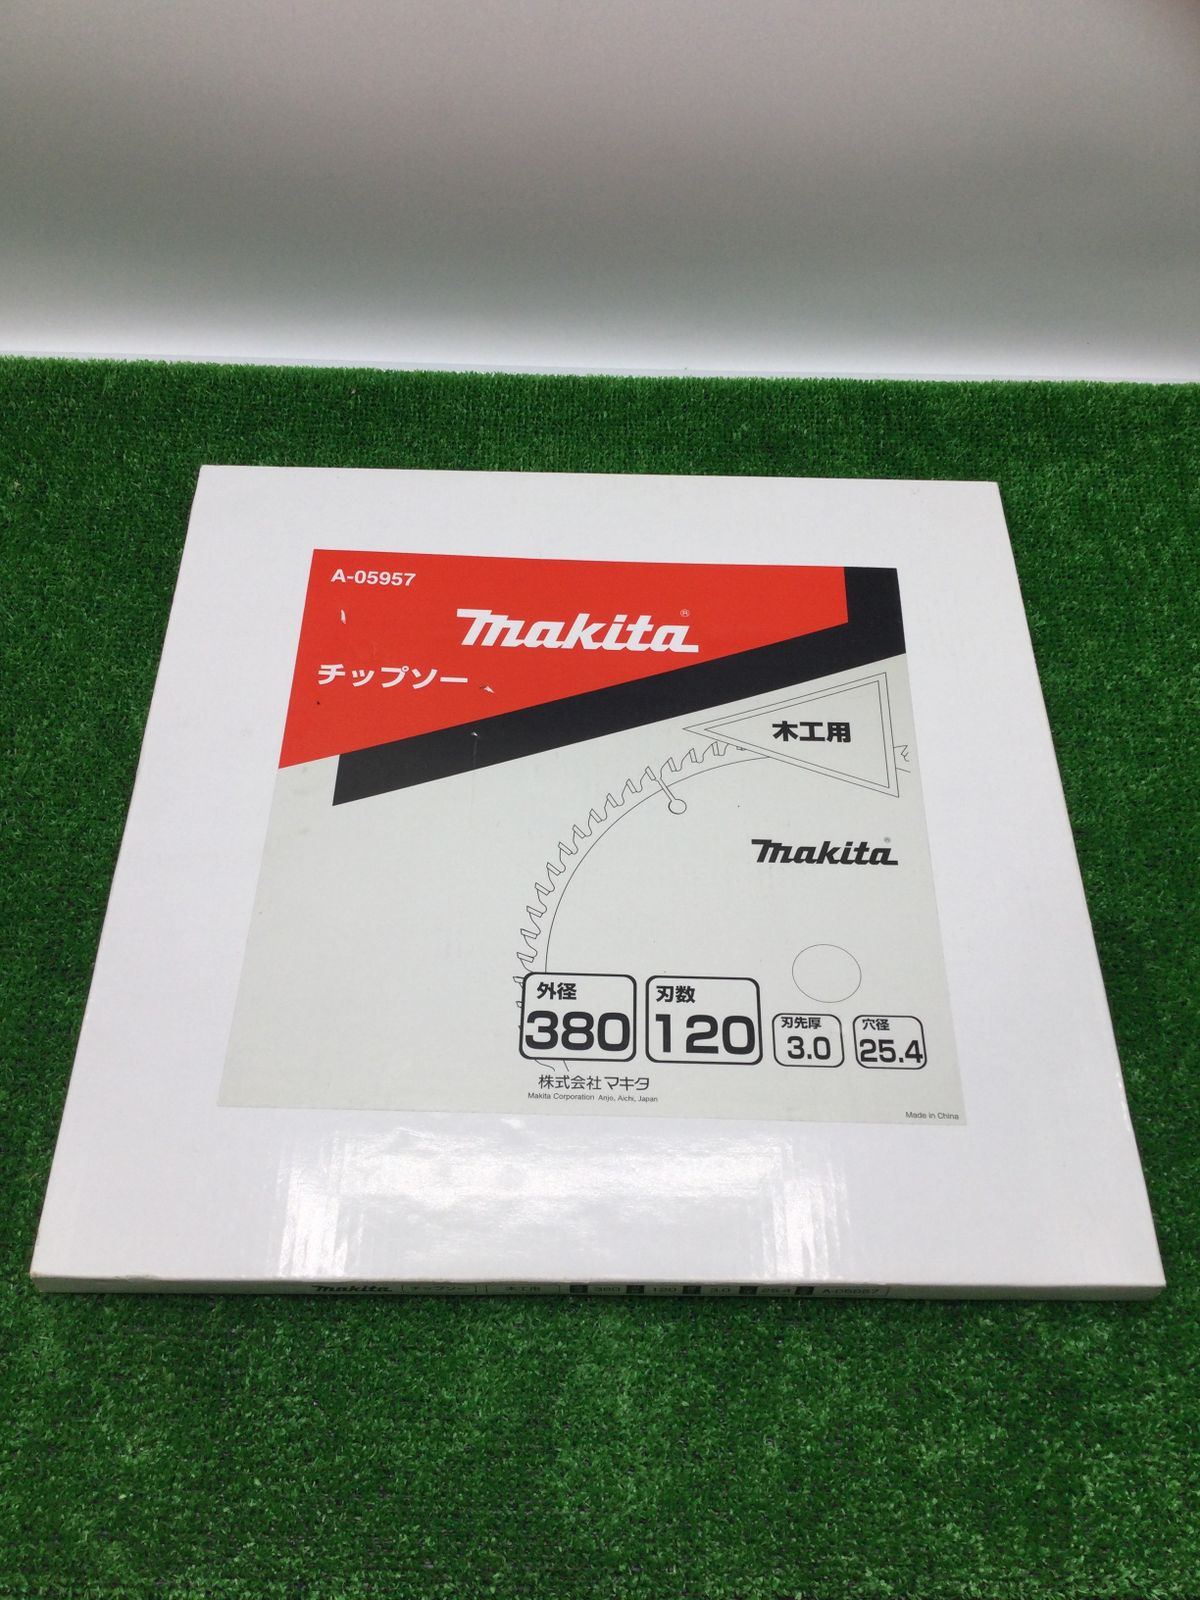 マキタ makita チップソー380-120T卓上 A-05957 [A071121] - 電動工具